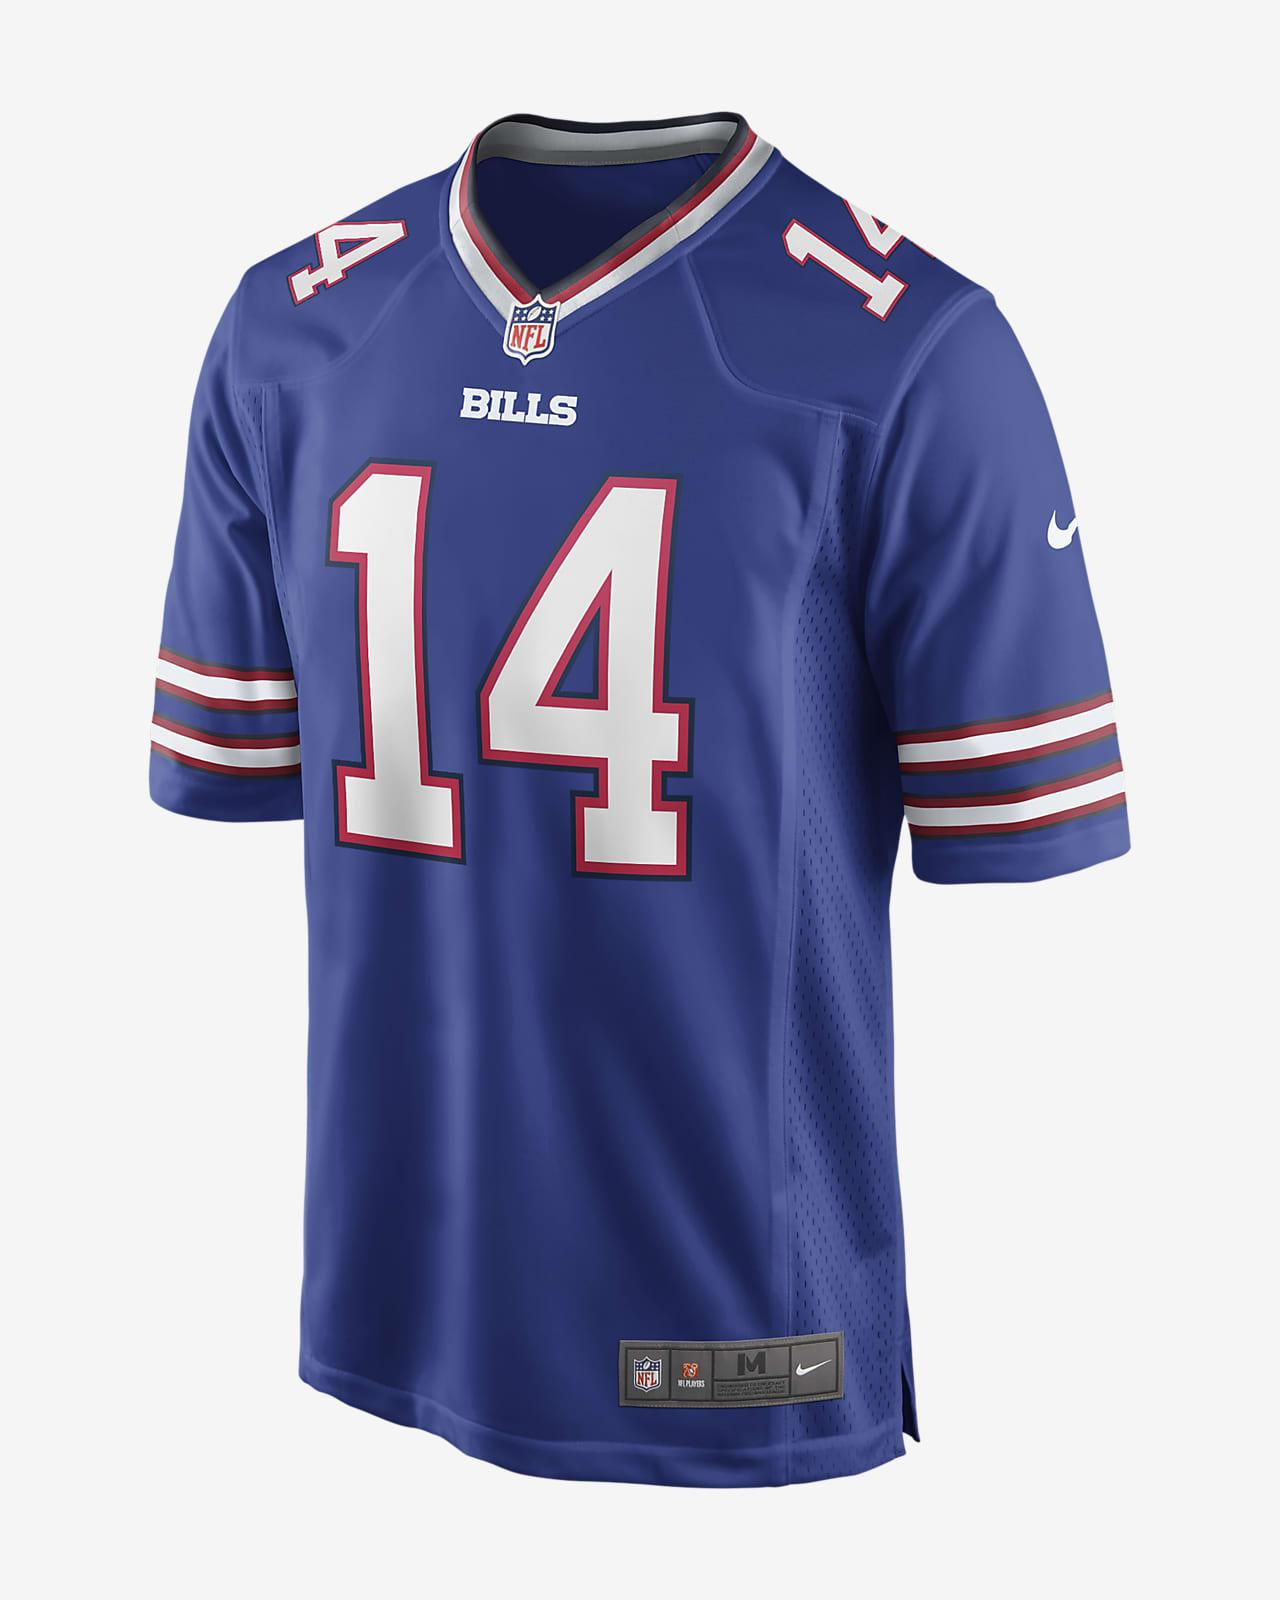 Jersey de fútbol americano para hombre NFL Buffalo Bills (Stefon Diggs)